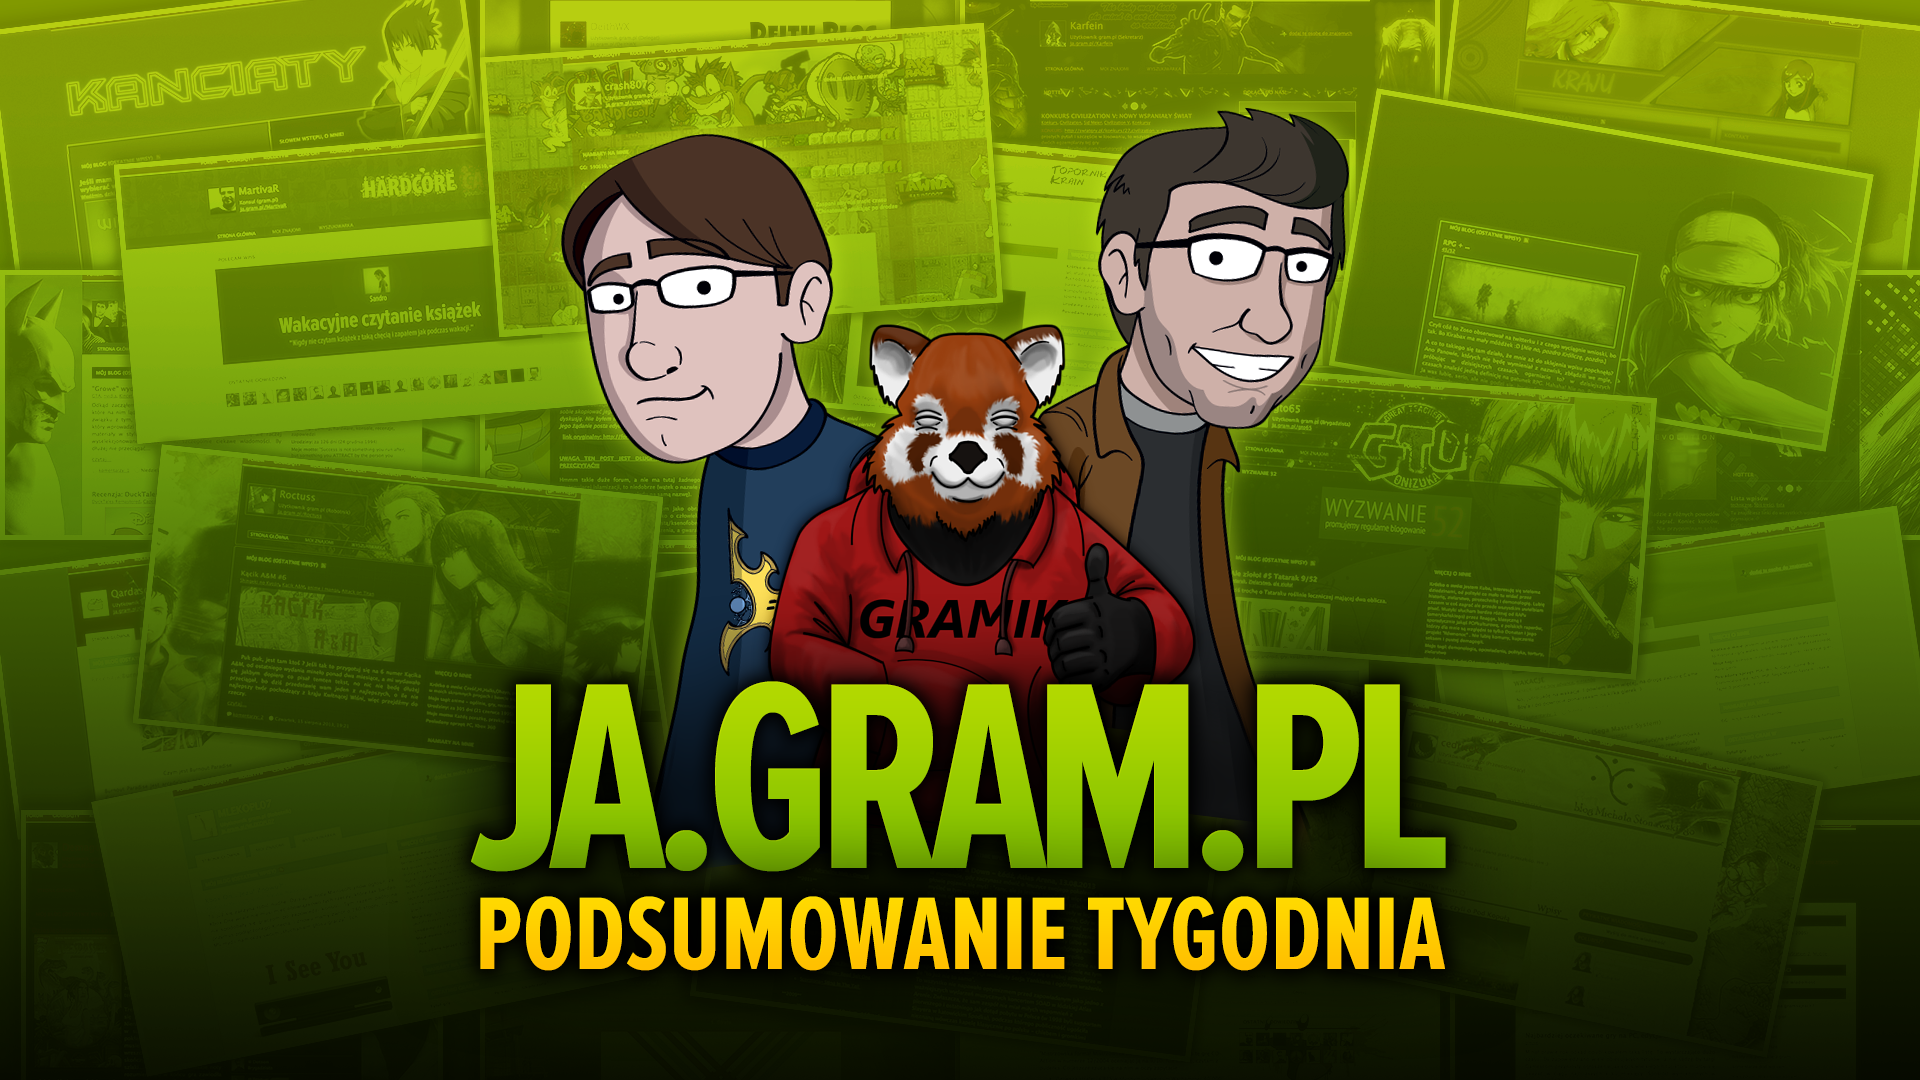 Co w gramsajtach piszczy #128 - Retrogranie, crowdfunding po polsku i twórczość gramsajtowa!